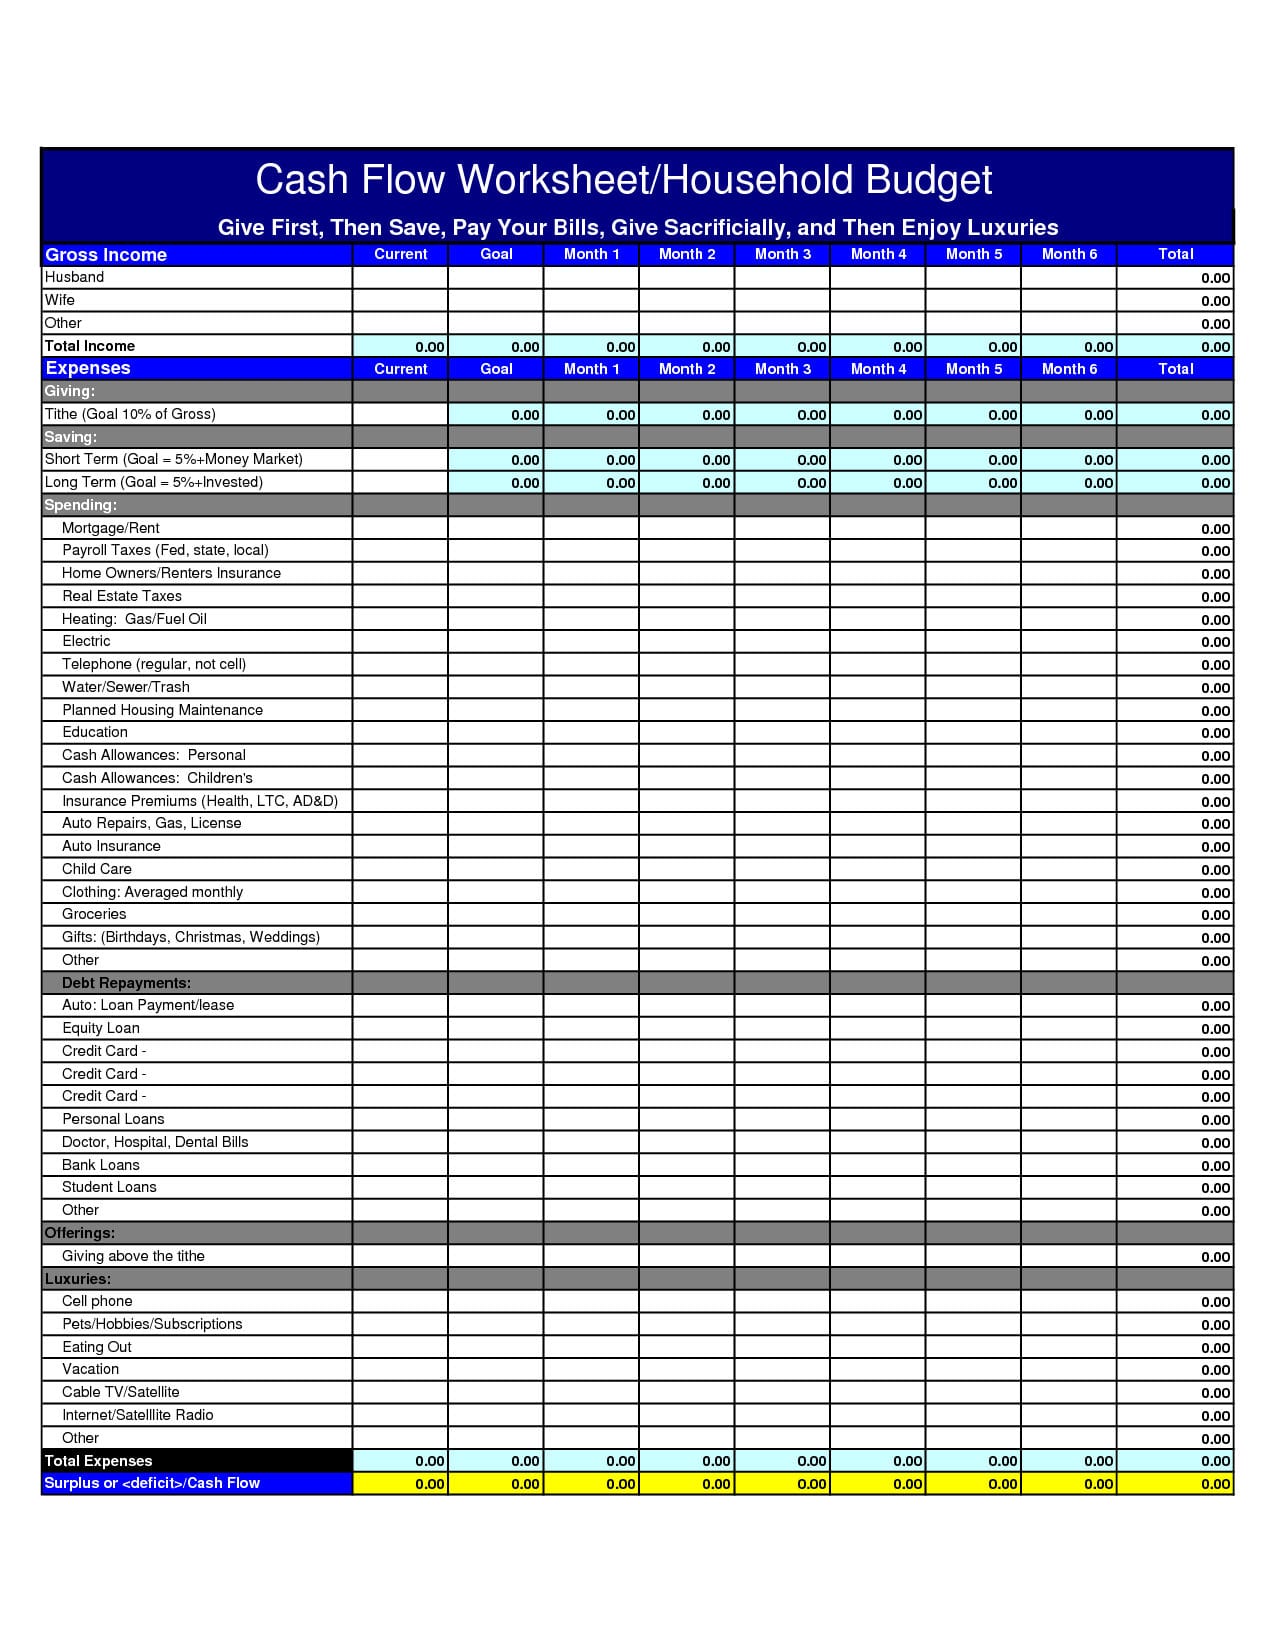 Cash Flow Budget Worksheet Excel 5 – Elsik Blue Cetane Inside Cash Flow Worksheet